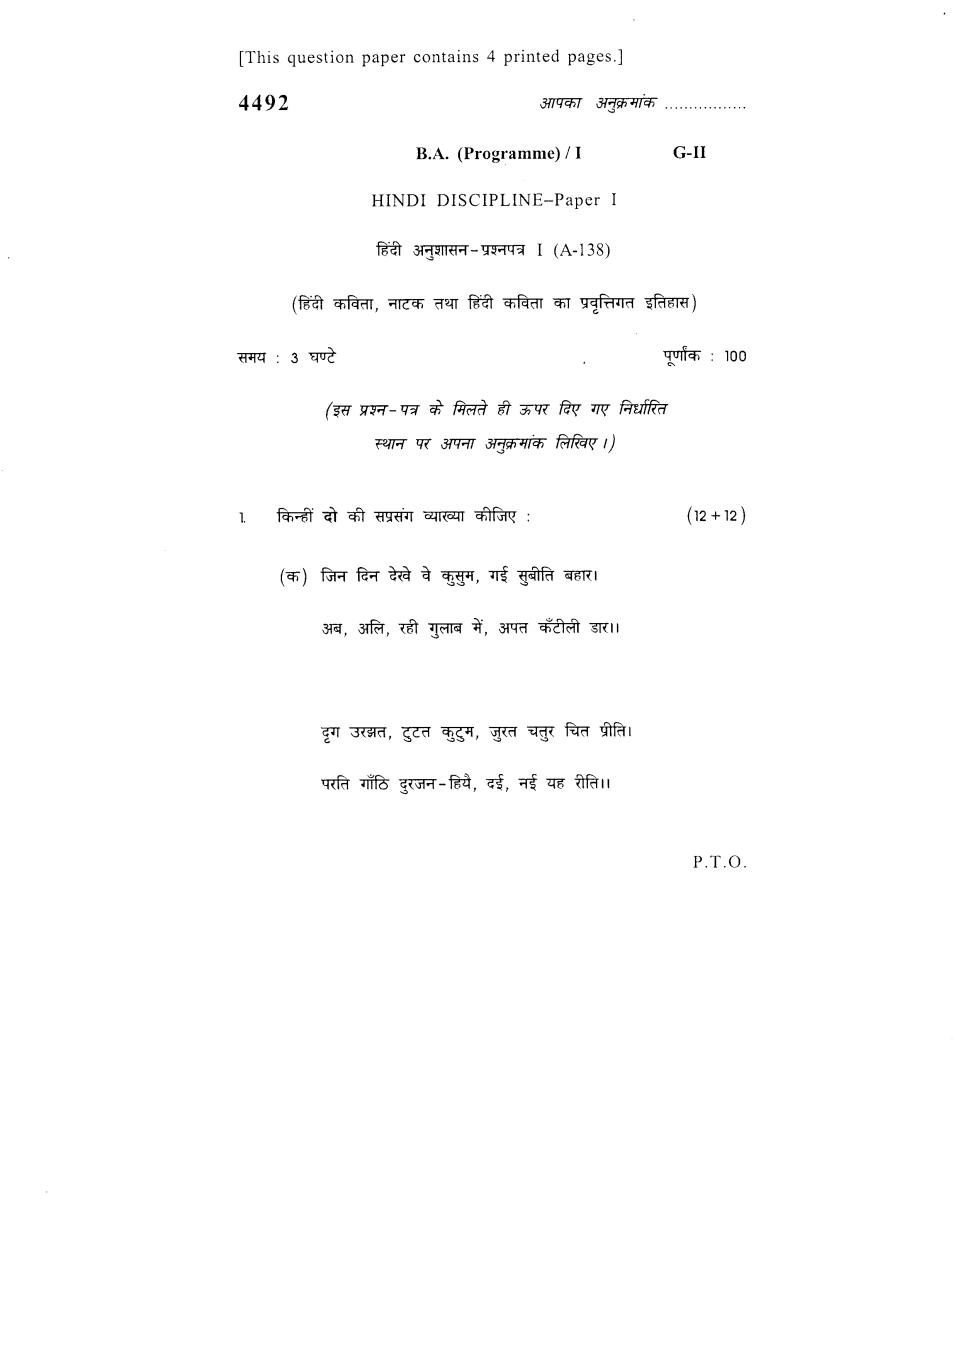 DU SOL Question Paper 2018 BA Hindi - Hindi Language - Page 1